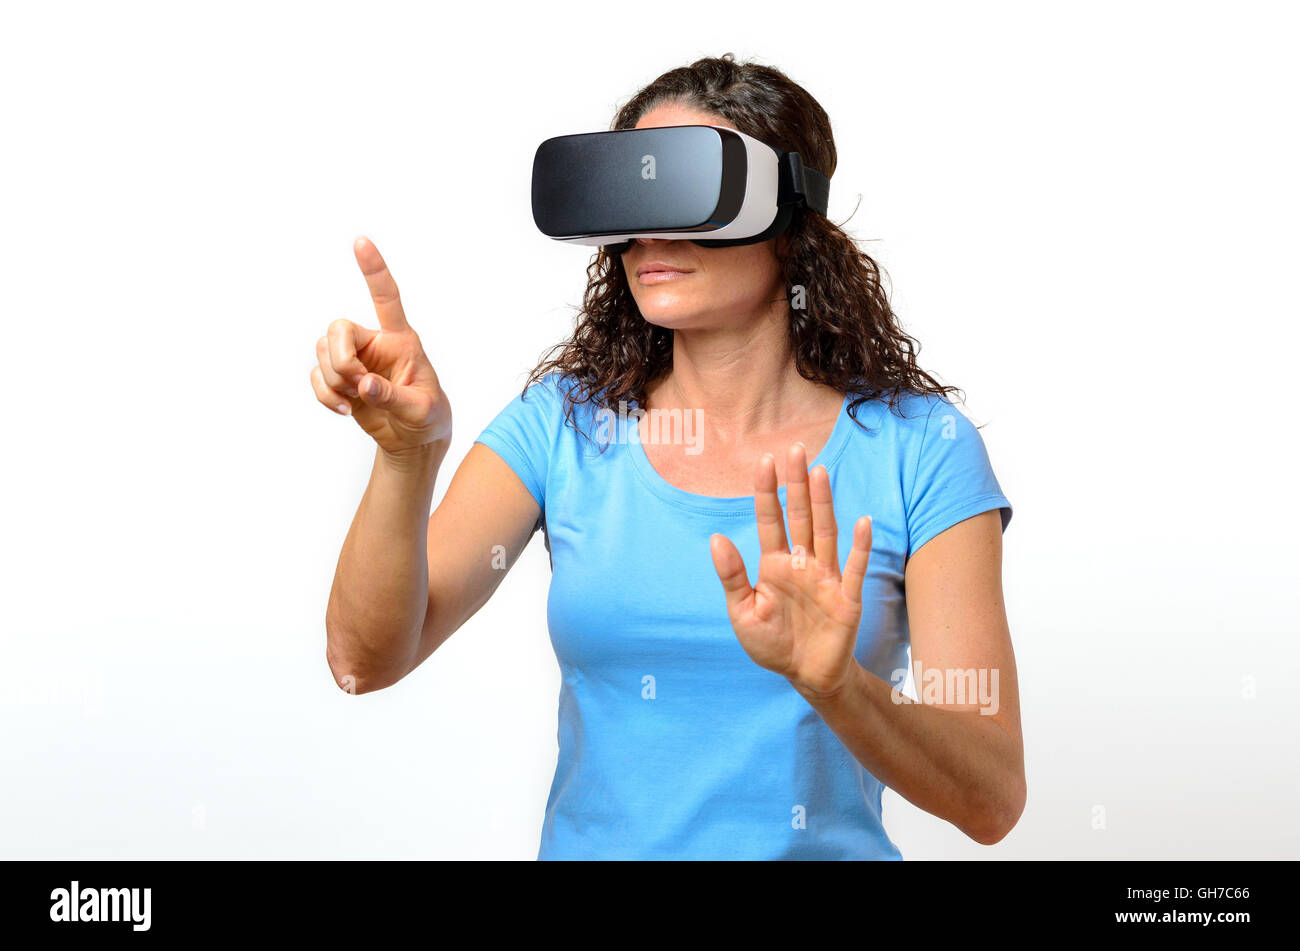 Femme victime d'un environnement virtuel alors qu'elle voit les graphiques simulées sur une paire de lunettes de réalité virtuelle avec un serio Banque D'Images